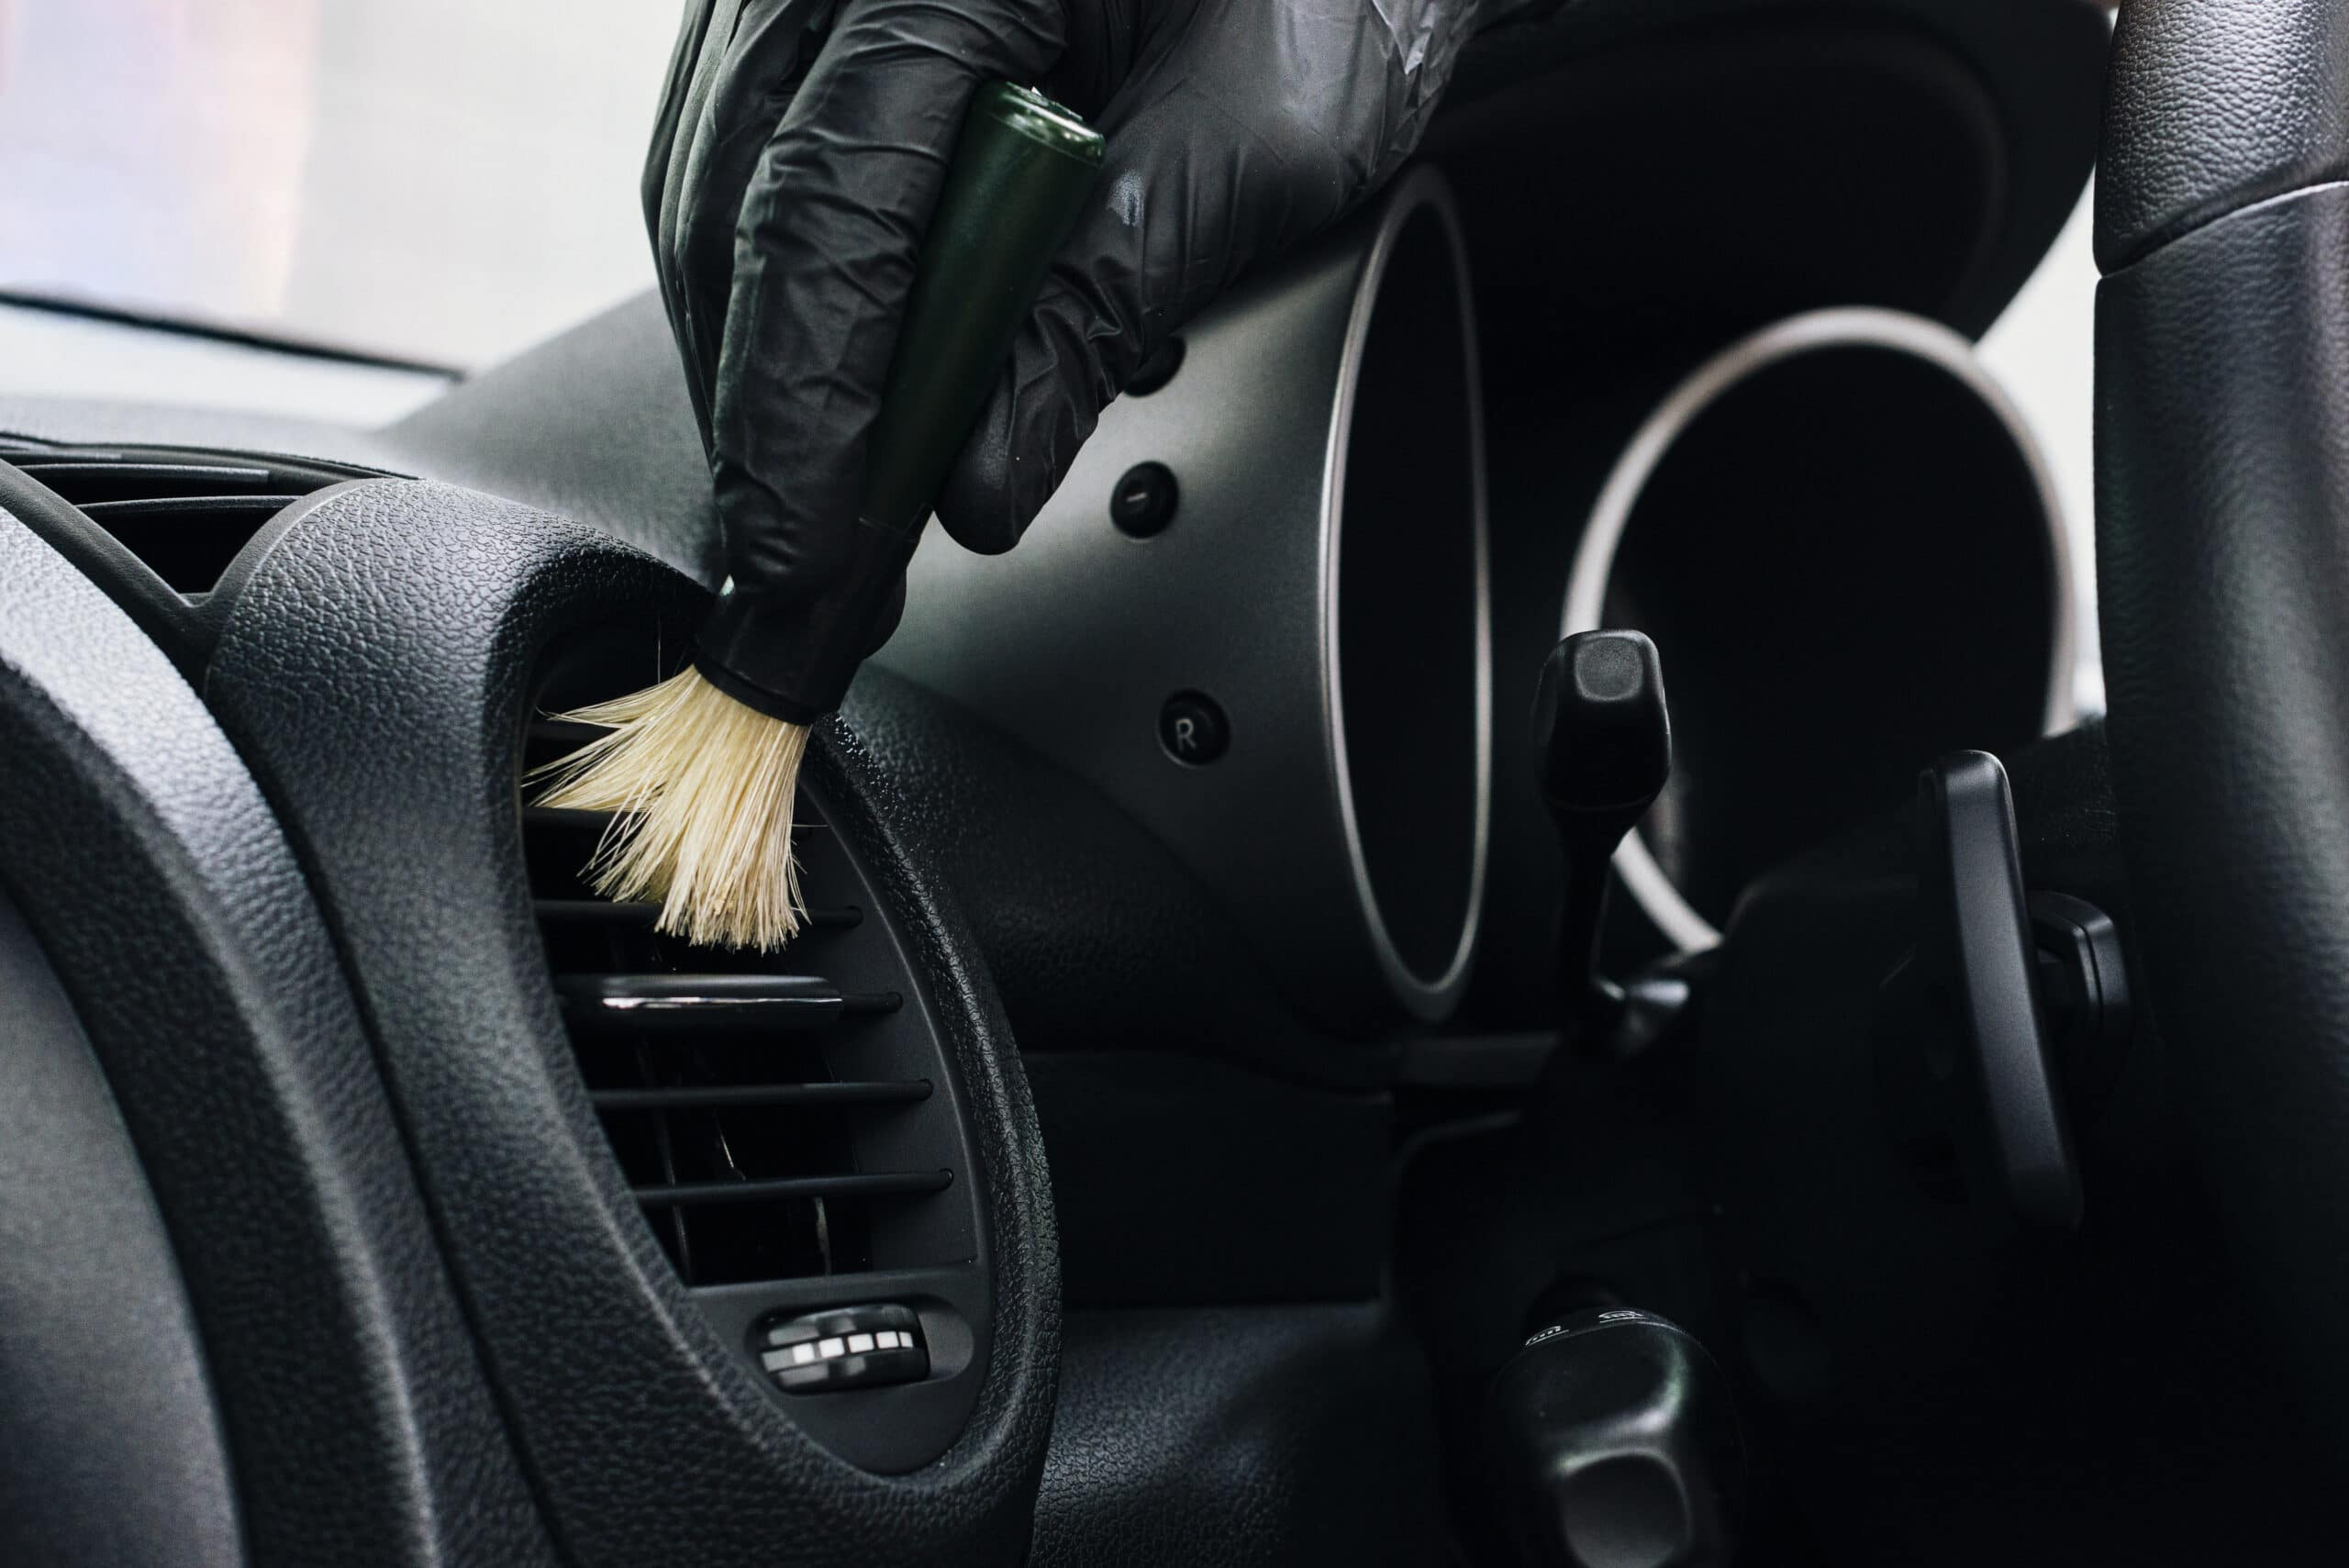 Higienização interna e do Ar Condicionado - Chevrolet Blazer